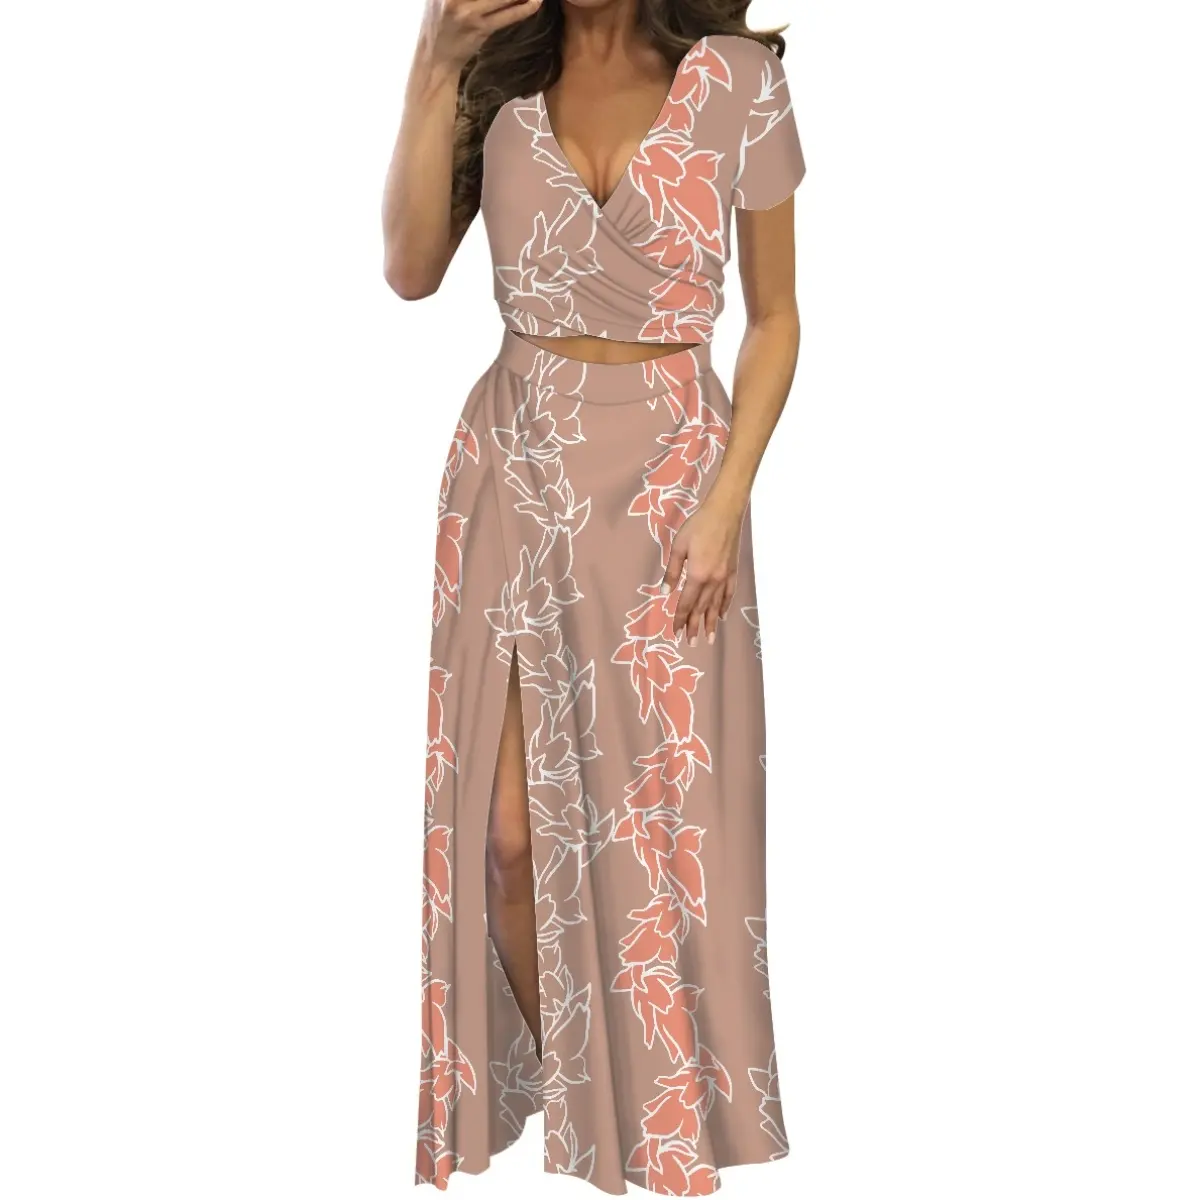 Son tasarım V boyun yarık etek iki parçalı setleri kadın elbise Pua çiçek dalga sanat baskı kısa kollu uzun etek Suit